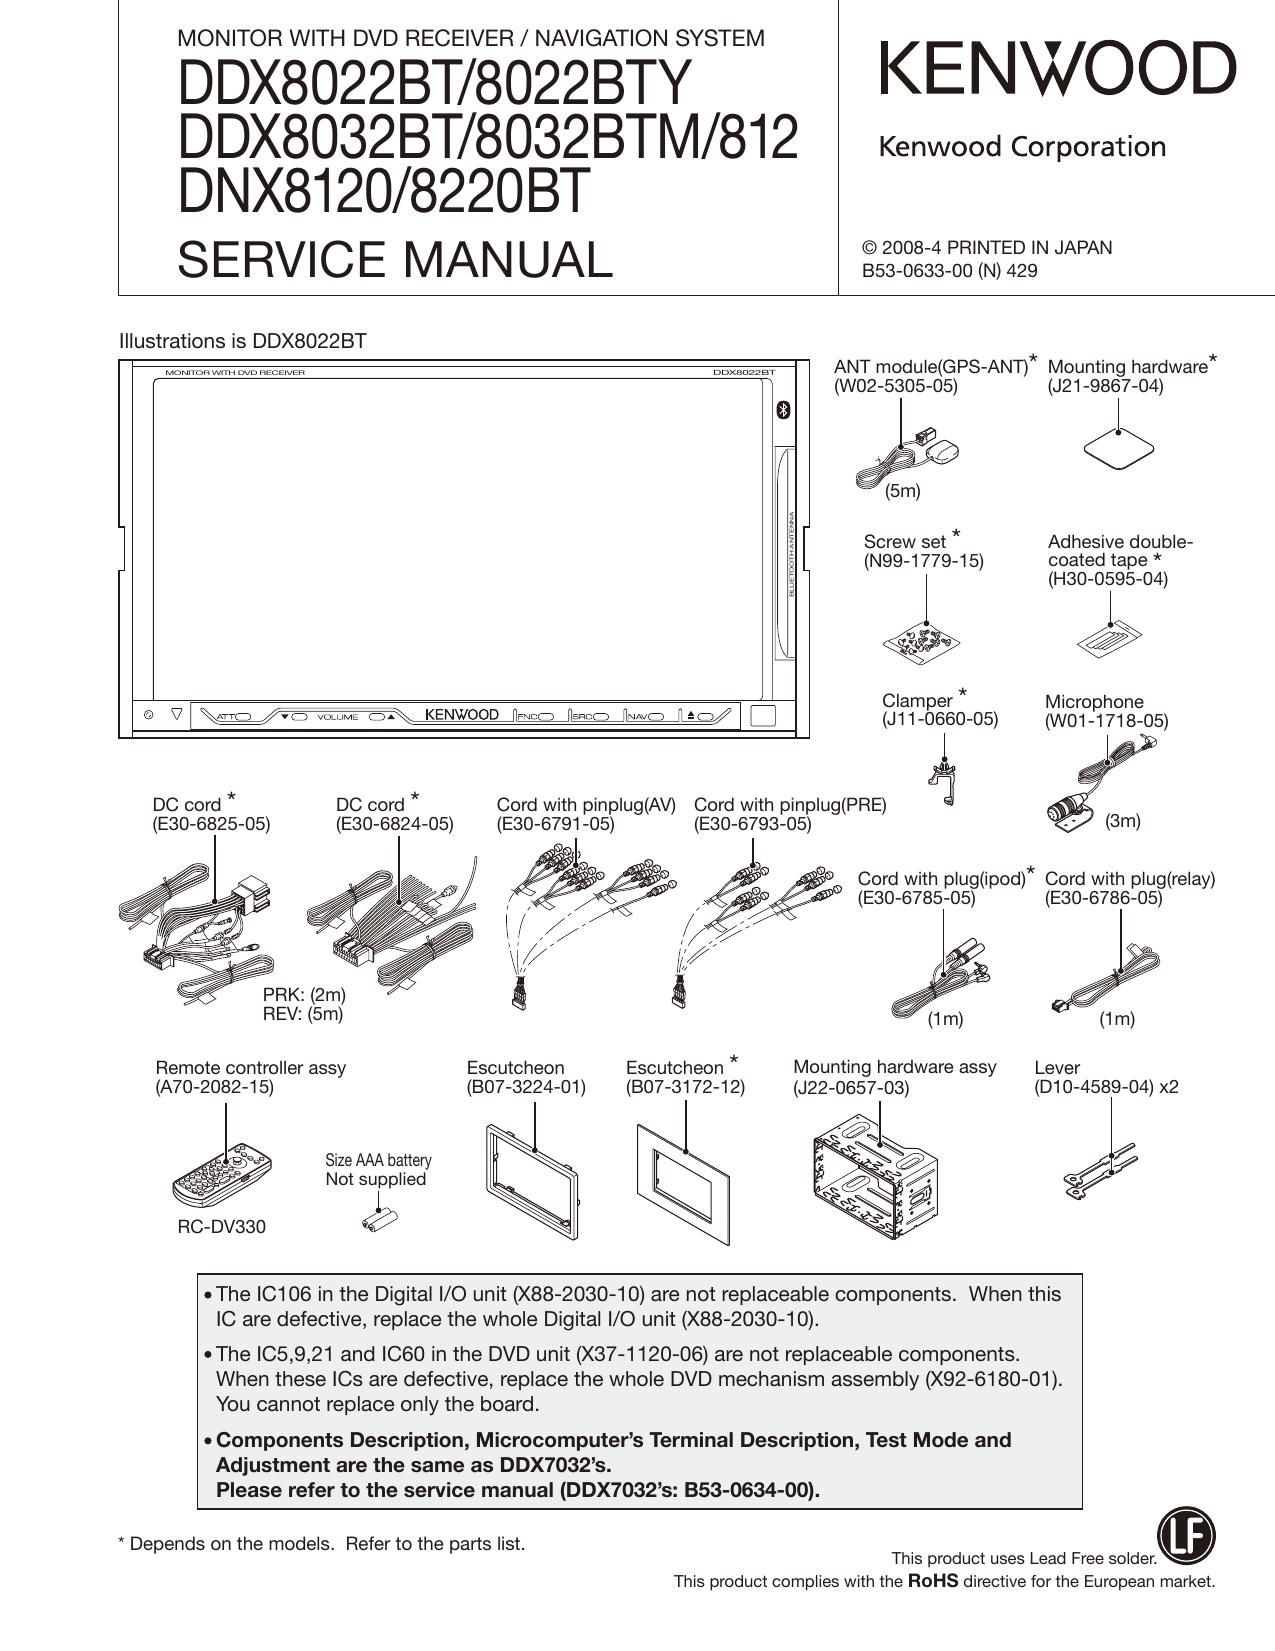 Kenwood DDX 8022 BT Service Manual